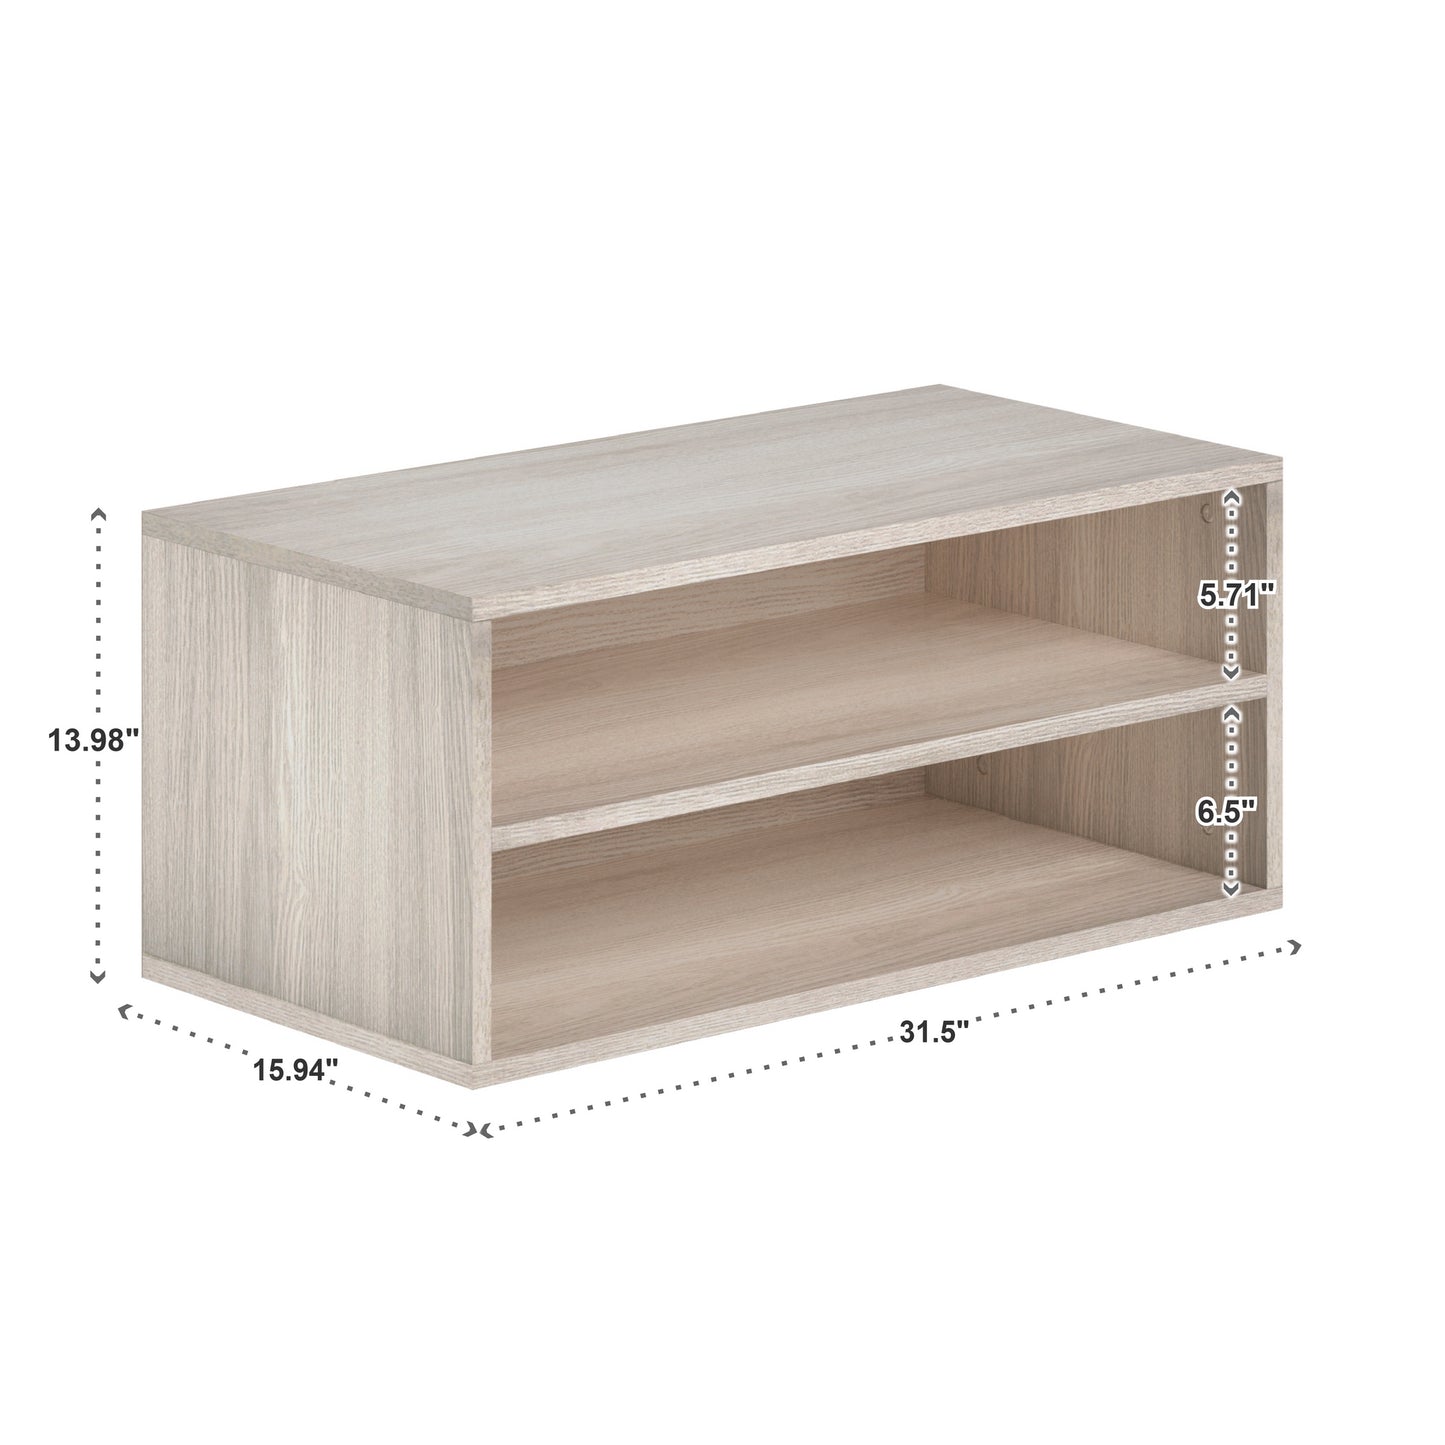 Stackable Storage Organizer - Large 1 - Shelf Cube, White Finish